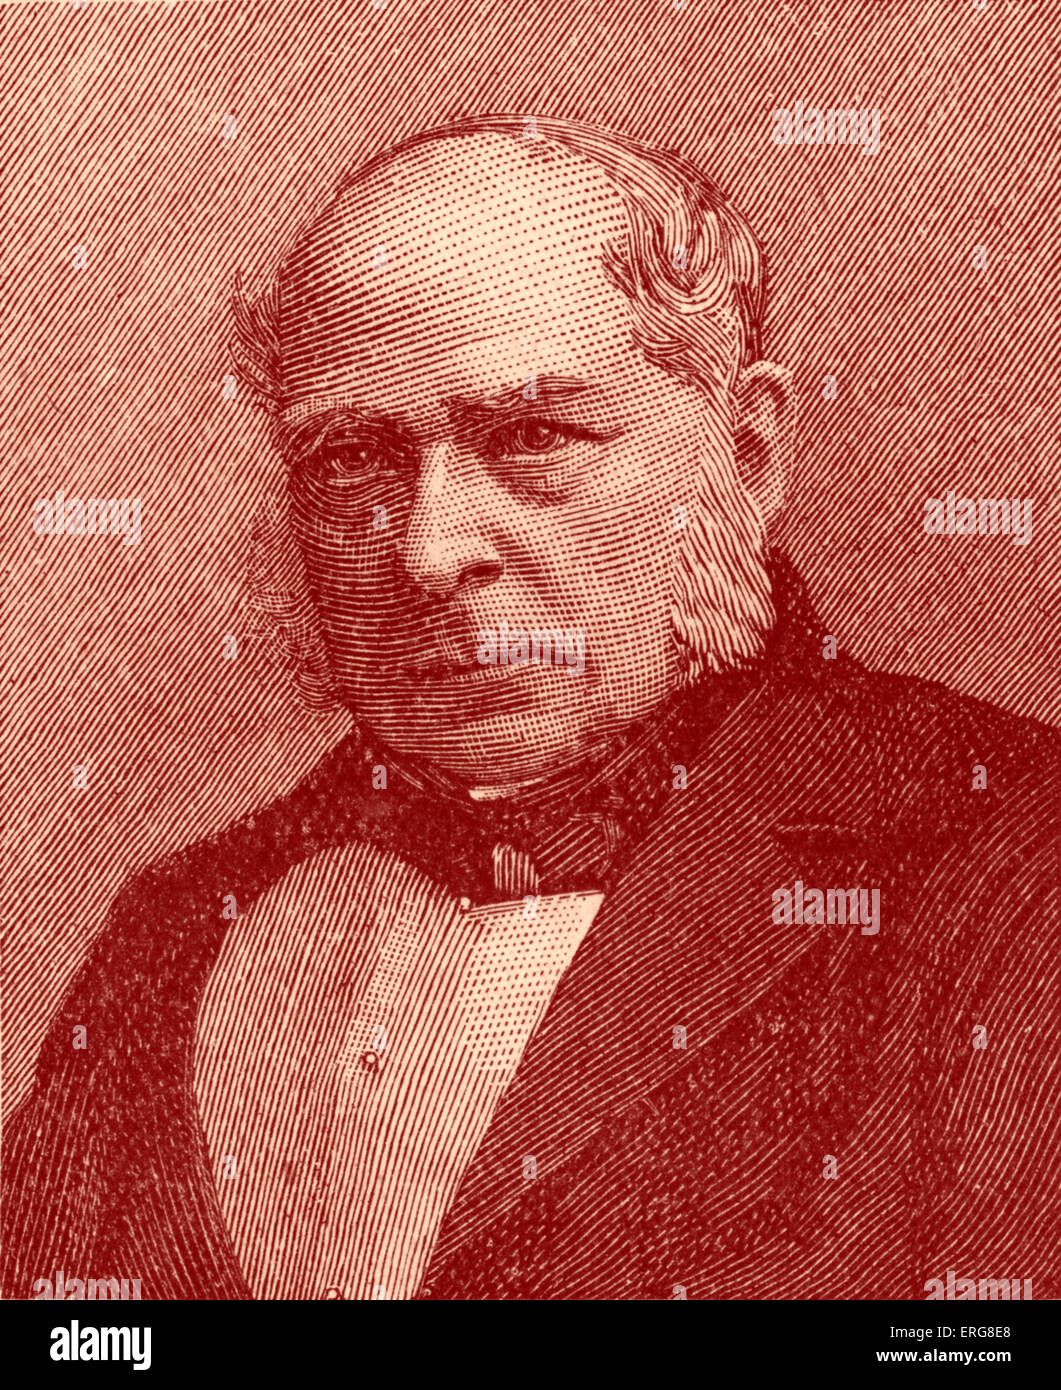 Sir Charles Wheatstone - ritratto. Scienziato inglese e inventore, meglio conosciuta per i contributi allo sviluppo di Wheatstone Foto Stock